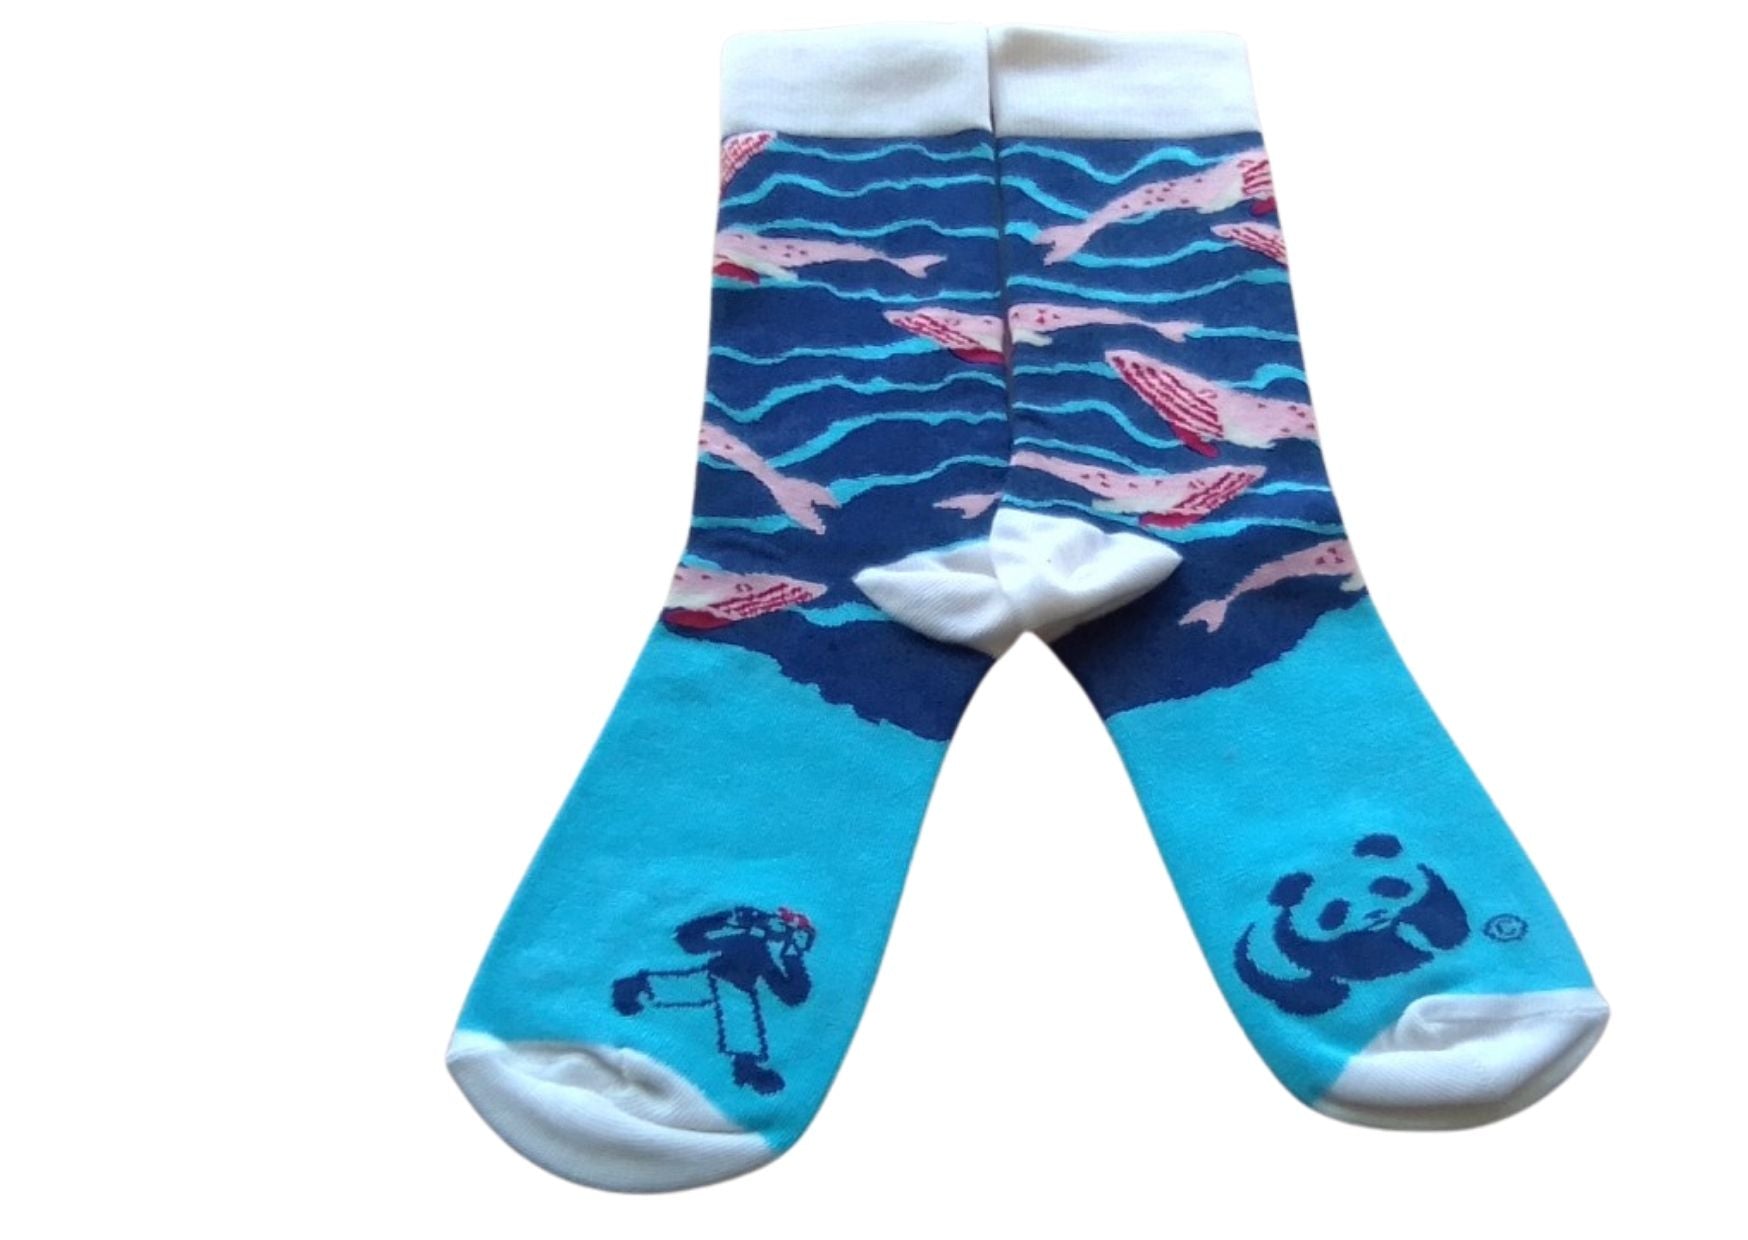 FEAT. sock co.'s Whales socks